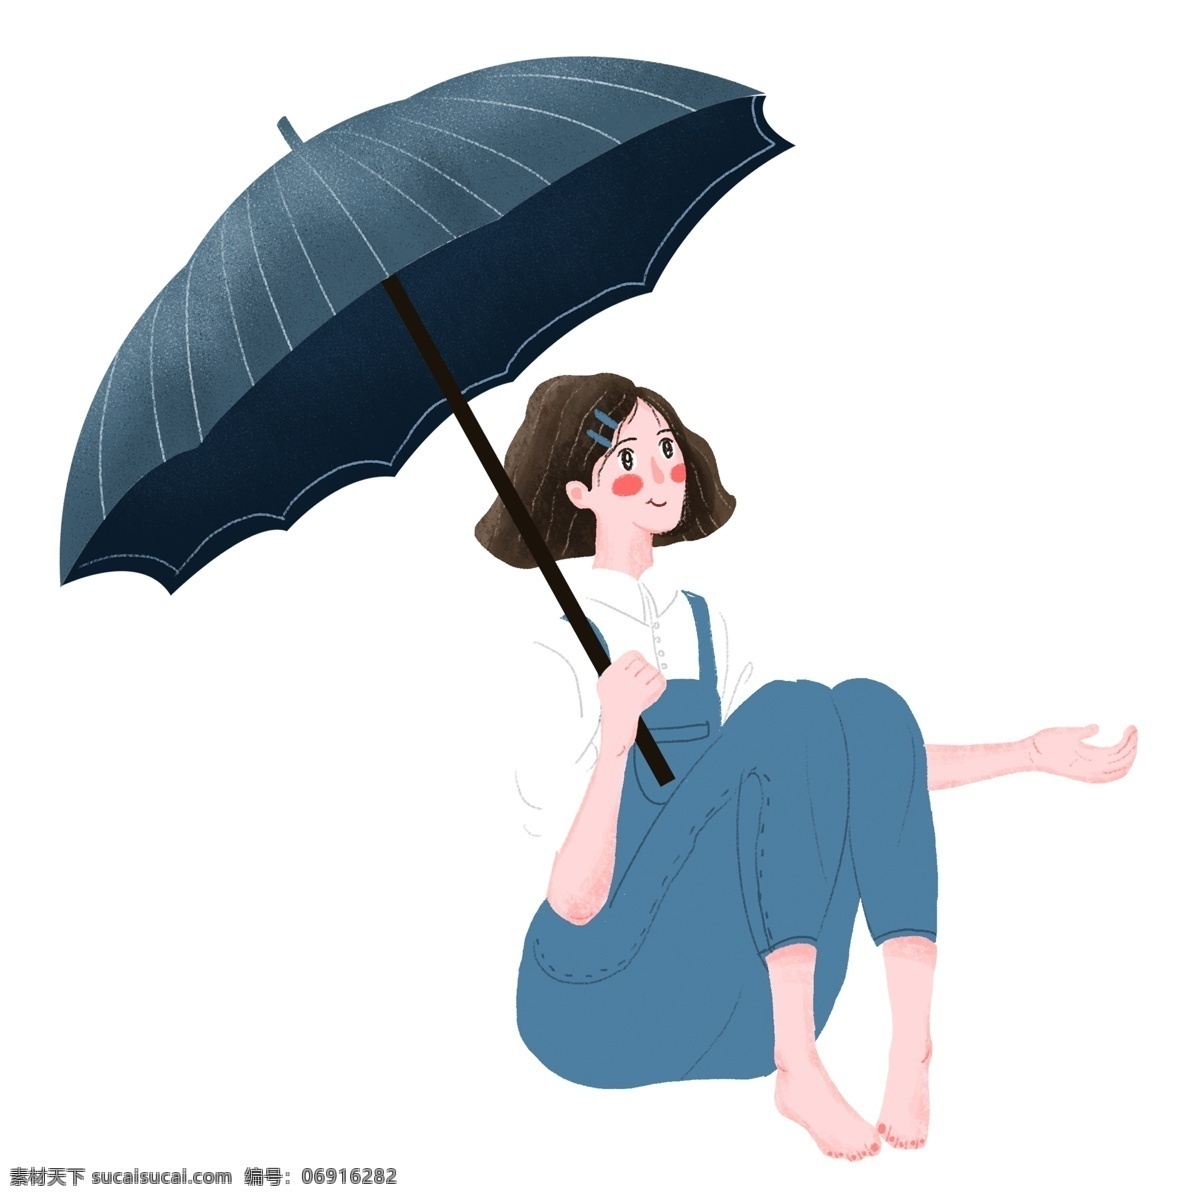 小 清新 可爱 撑 雨伞 女孩 卡通 小清新 插画